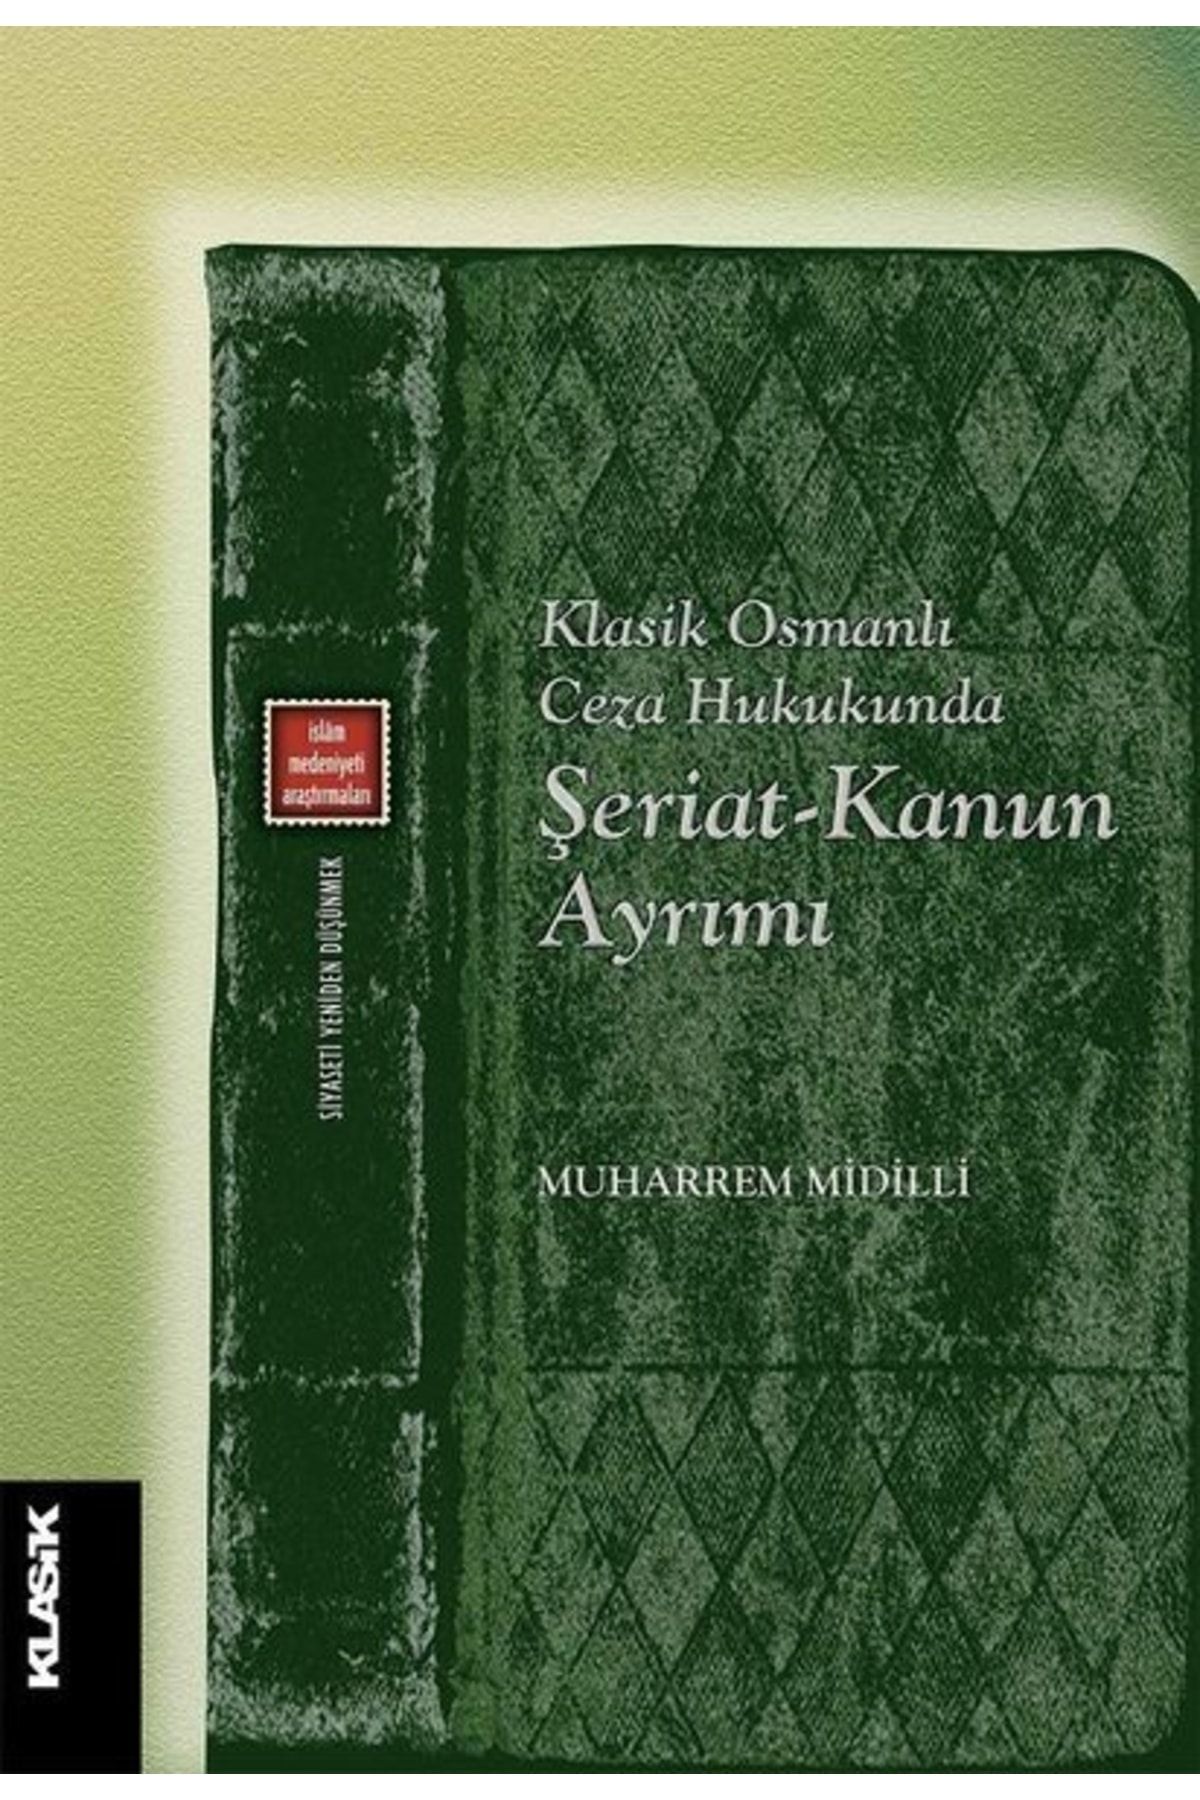 Klasik Yayınları Klasik Osmanlı Ceza Hukukunda Şeriat-kanun Ayrımı - Muharrem Midilli